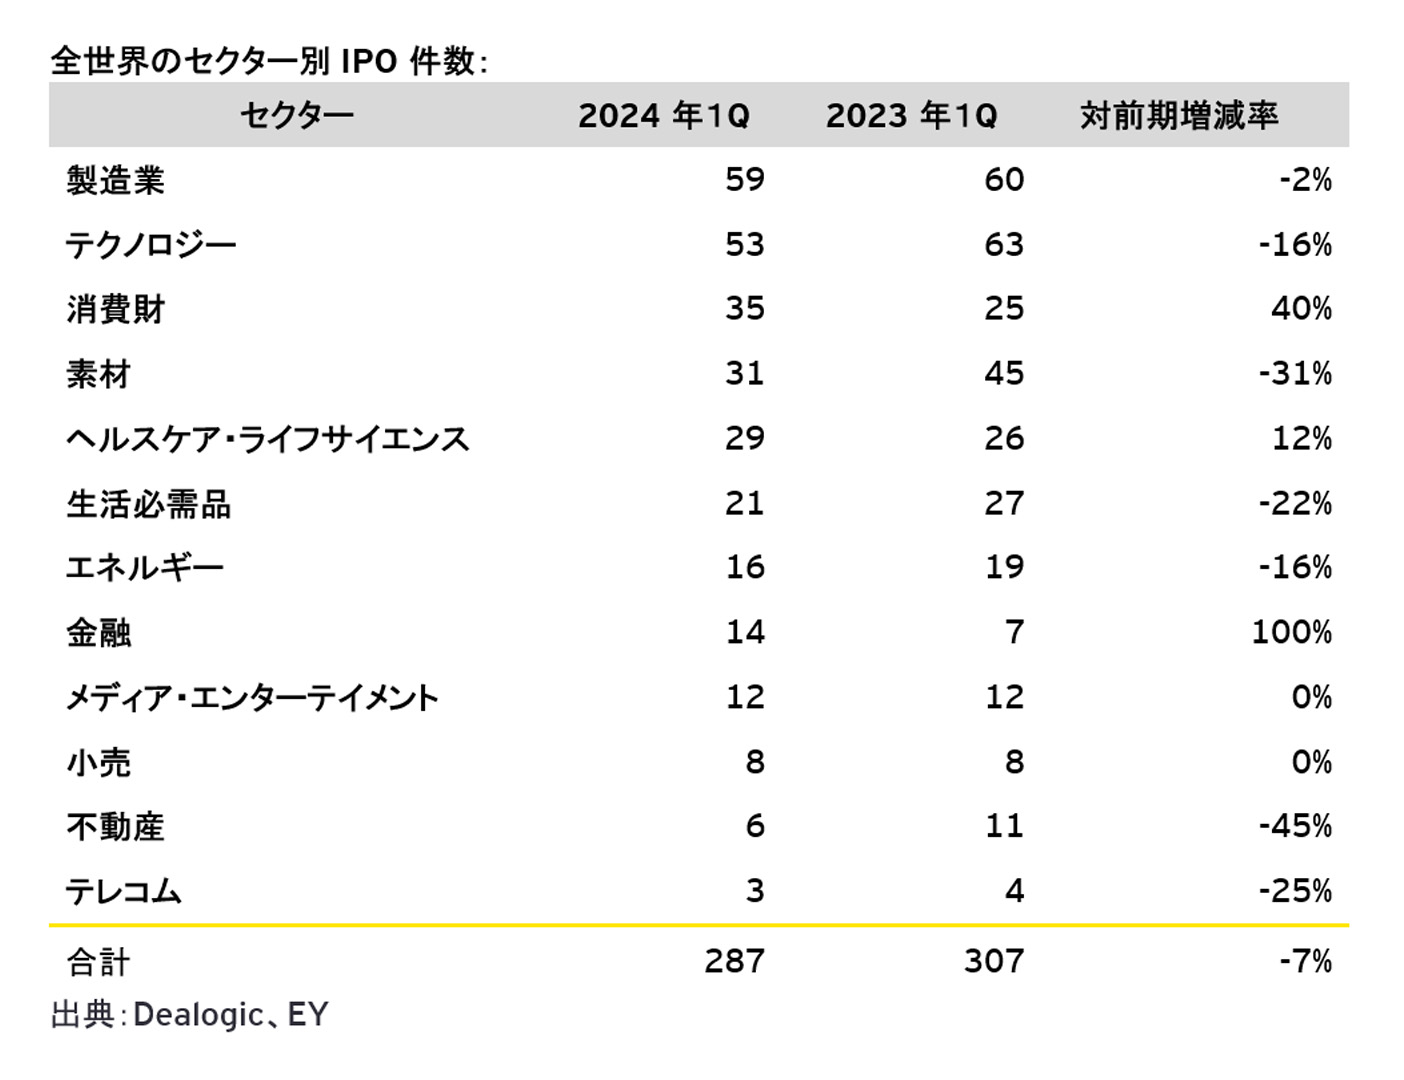 図2：全世界のセクター別IPO件数